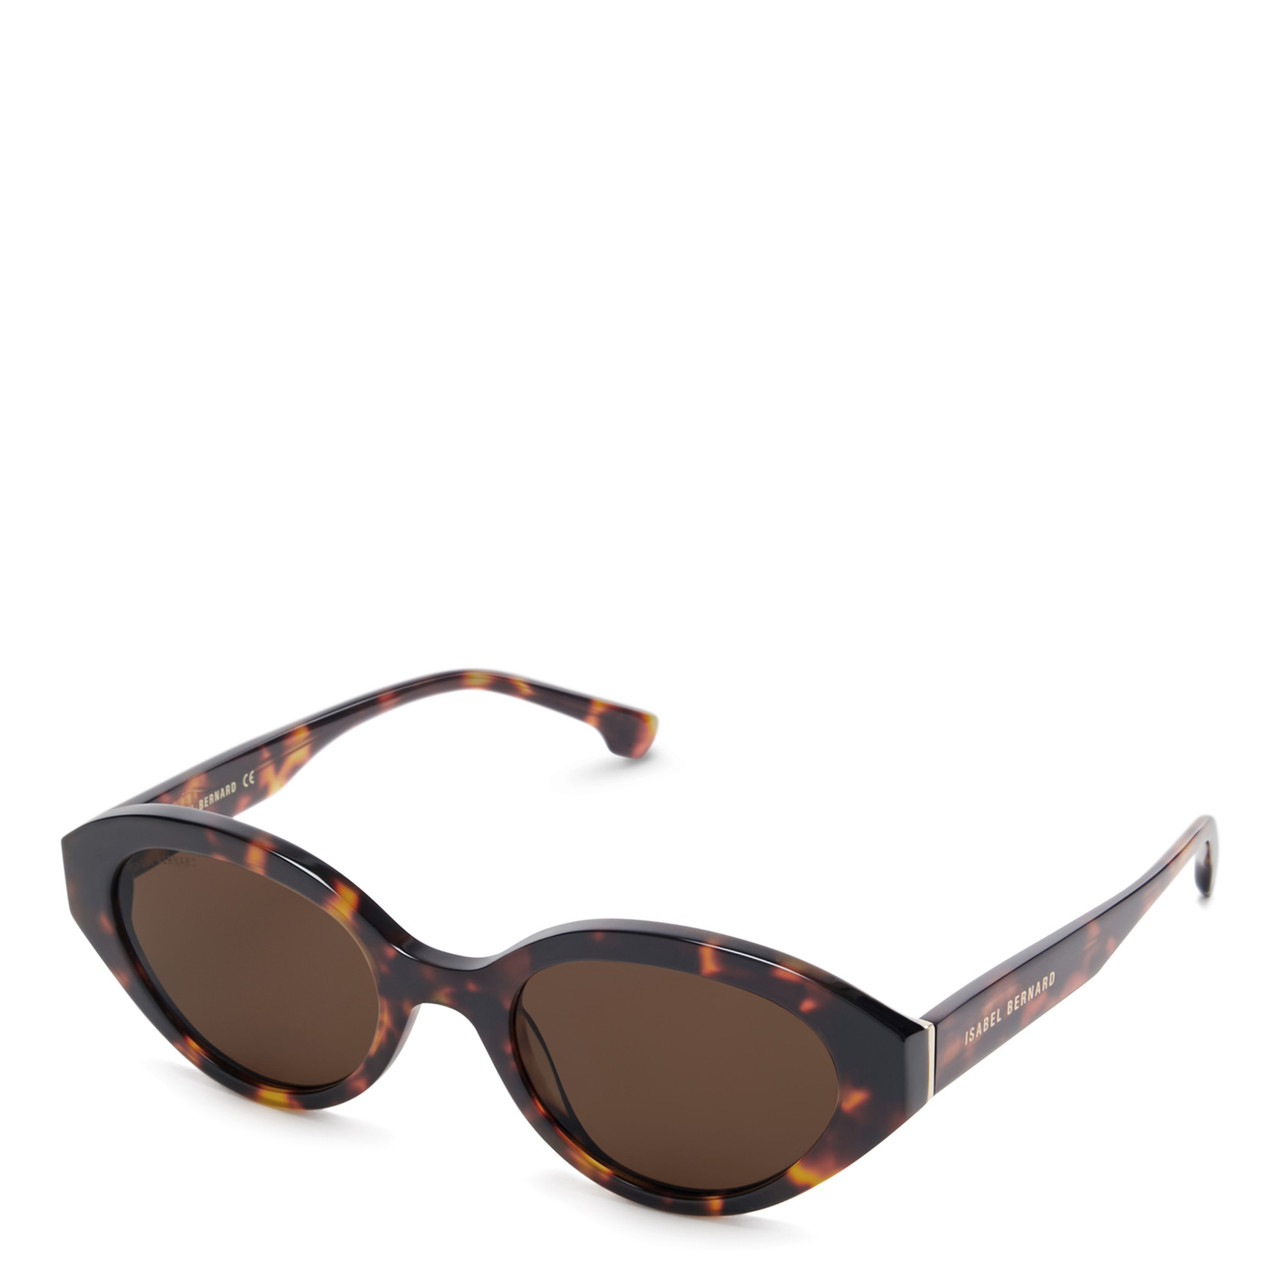 Eckige Sonnenbrille mit schwarzer Azetatfassung - Luxus